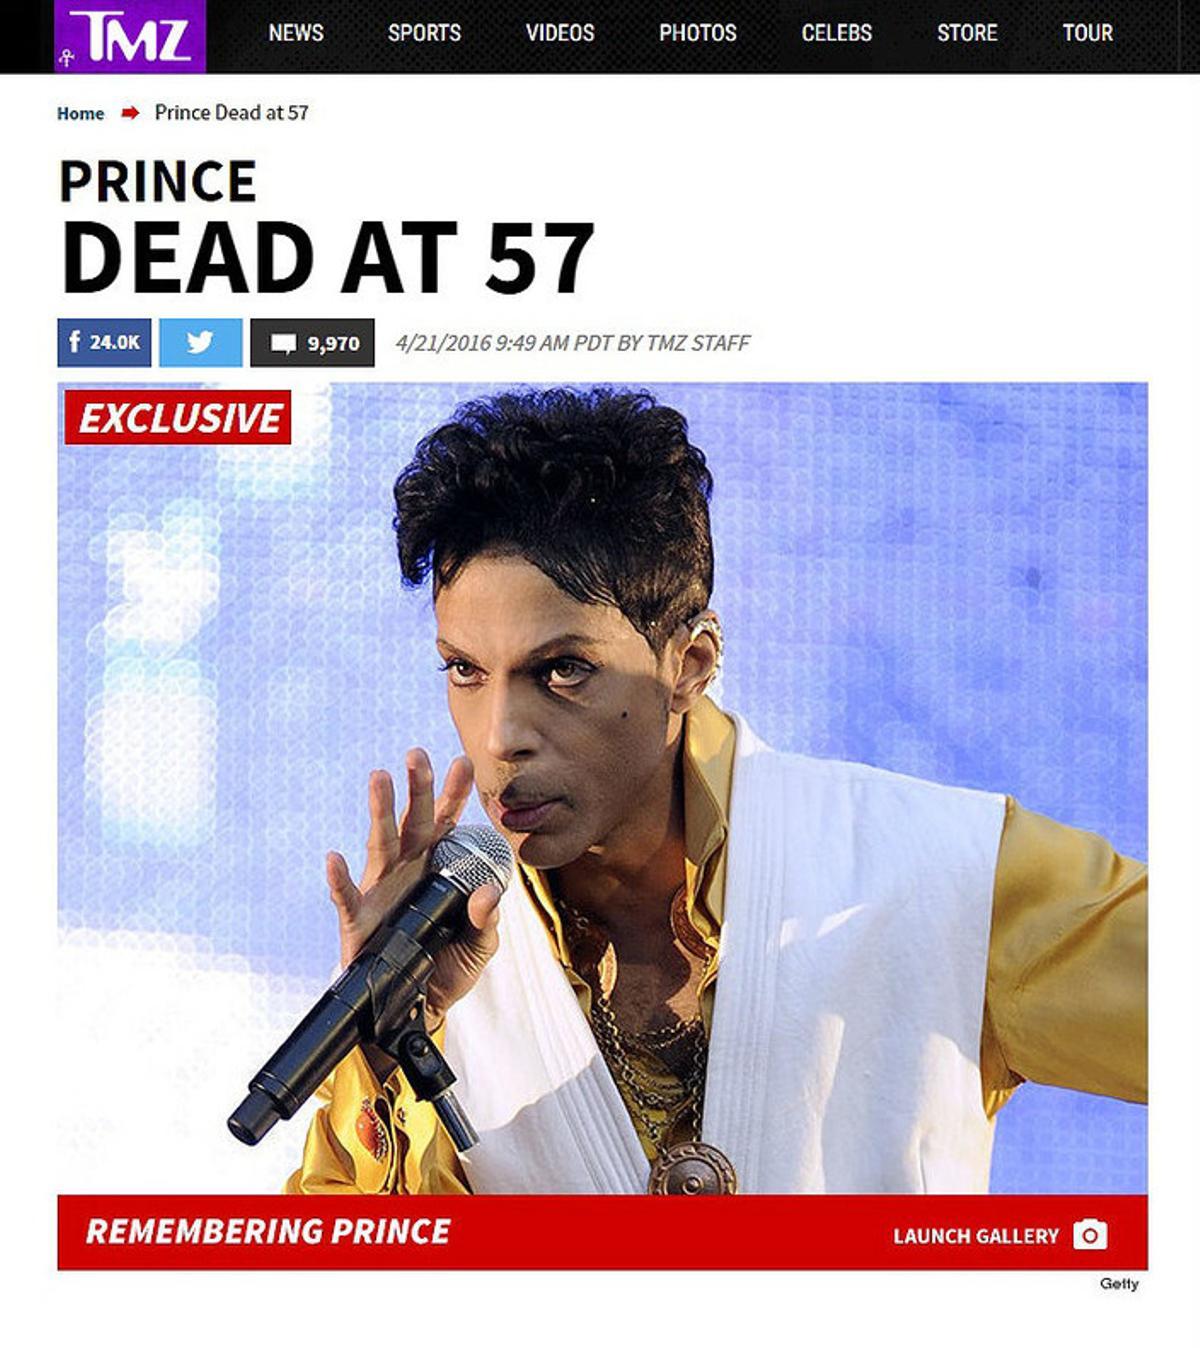 Imagen de la web TMZ, con la exclusiva de la muerte de Prince.